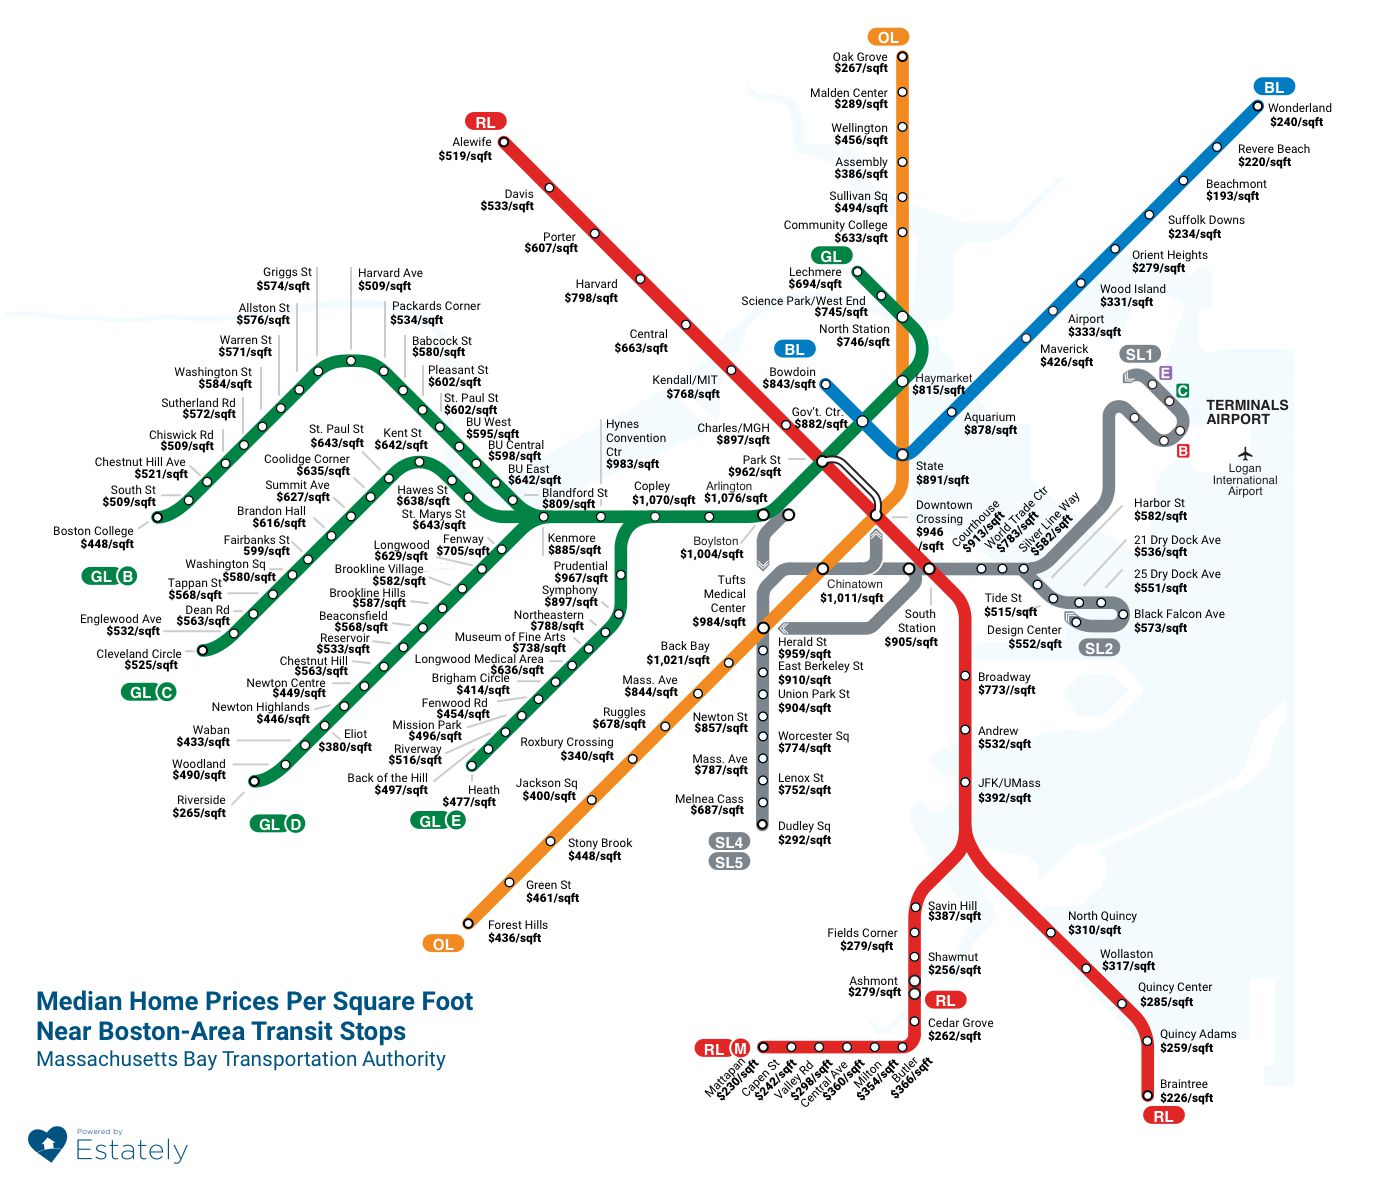 MBTA_metro_affordability@2x blog